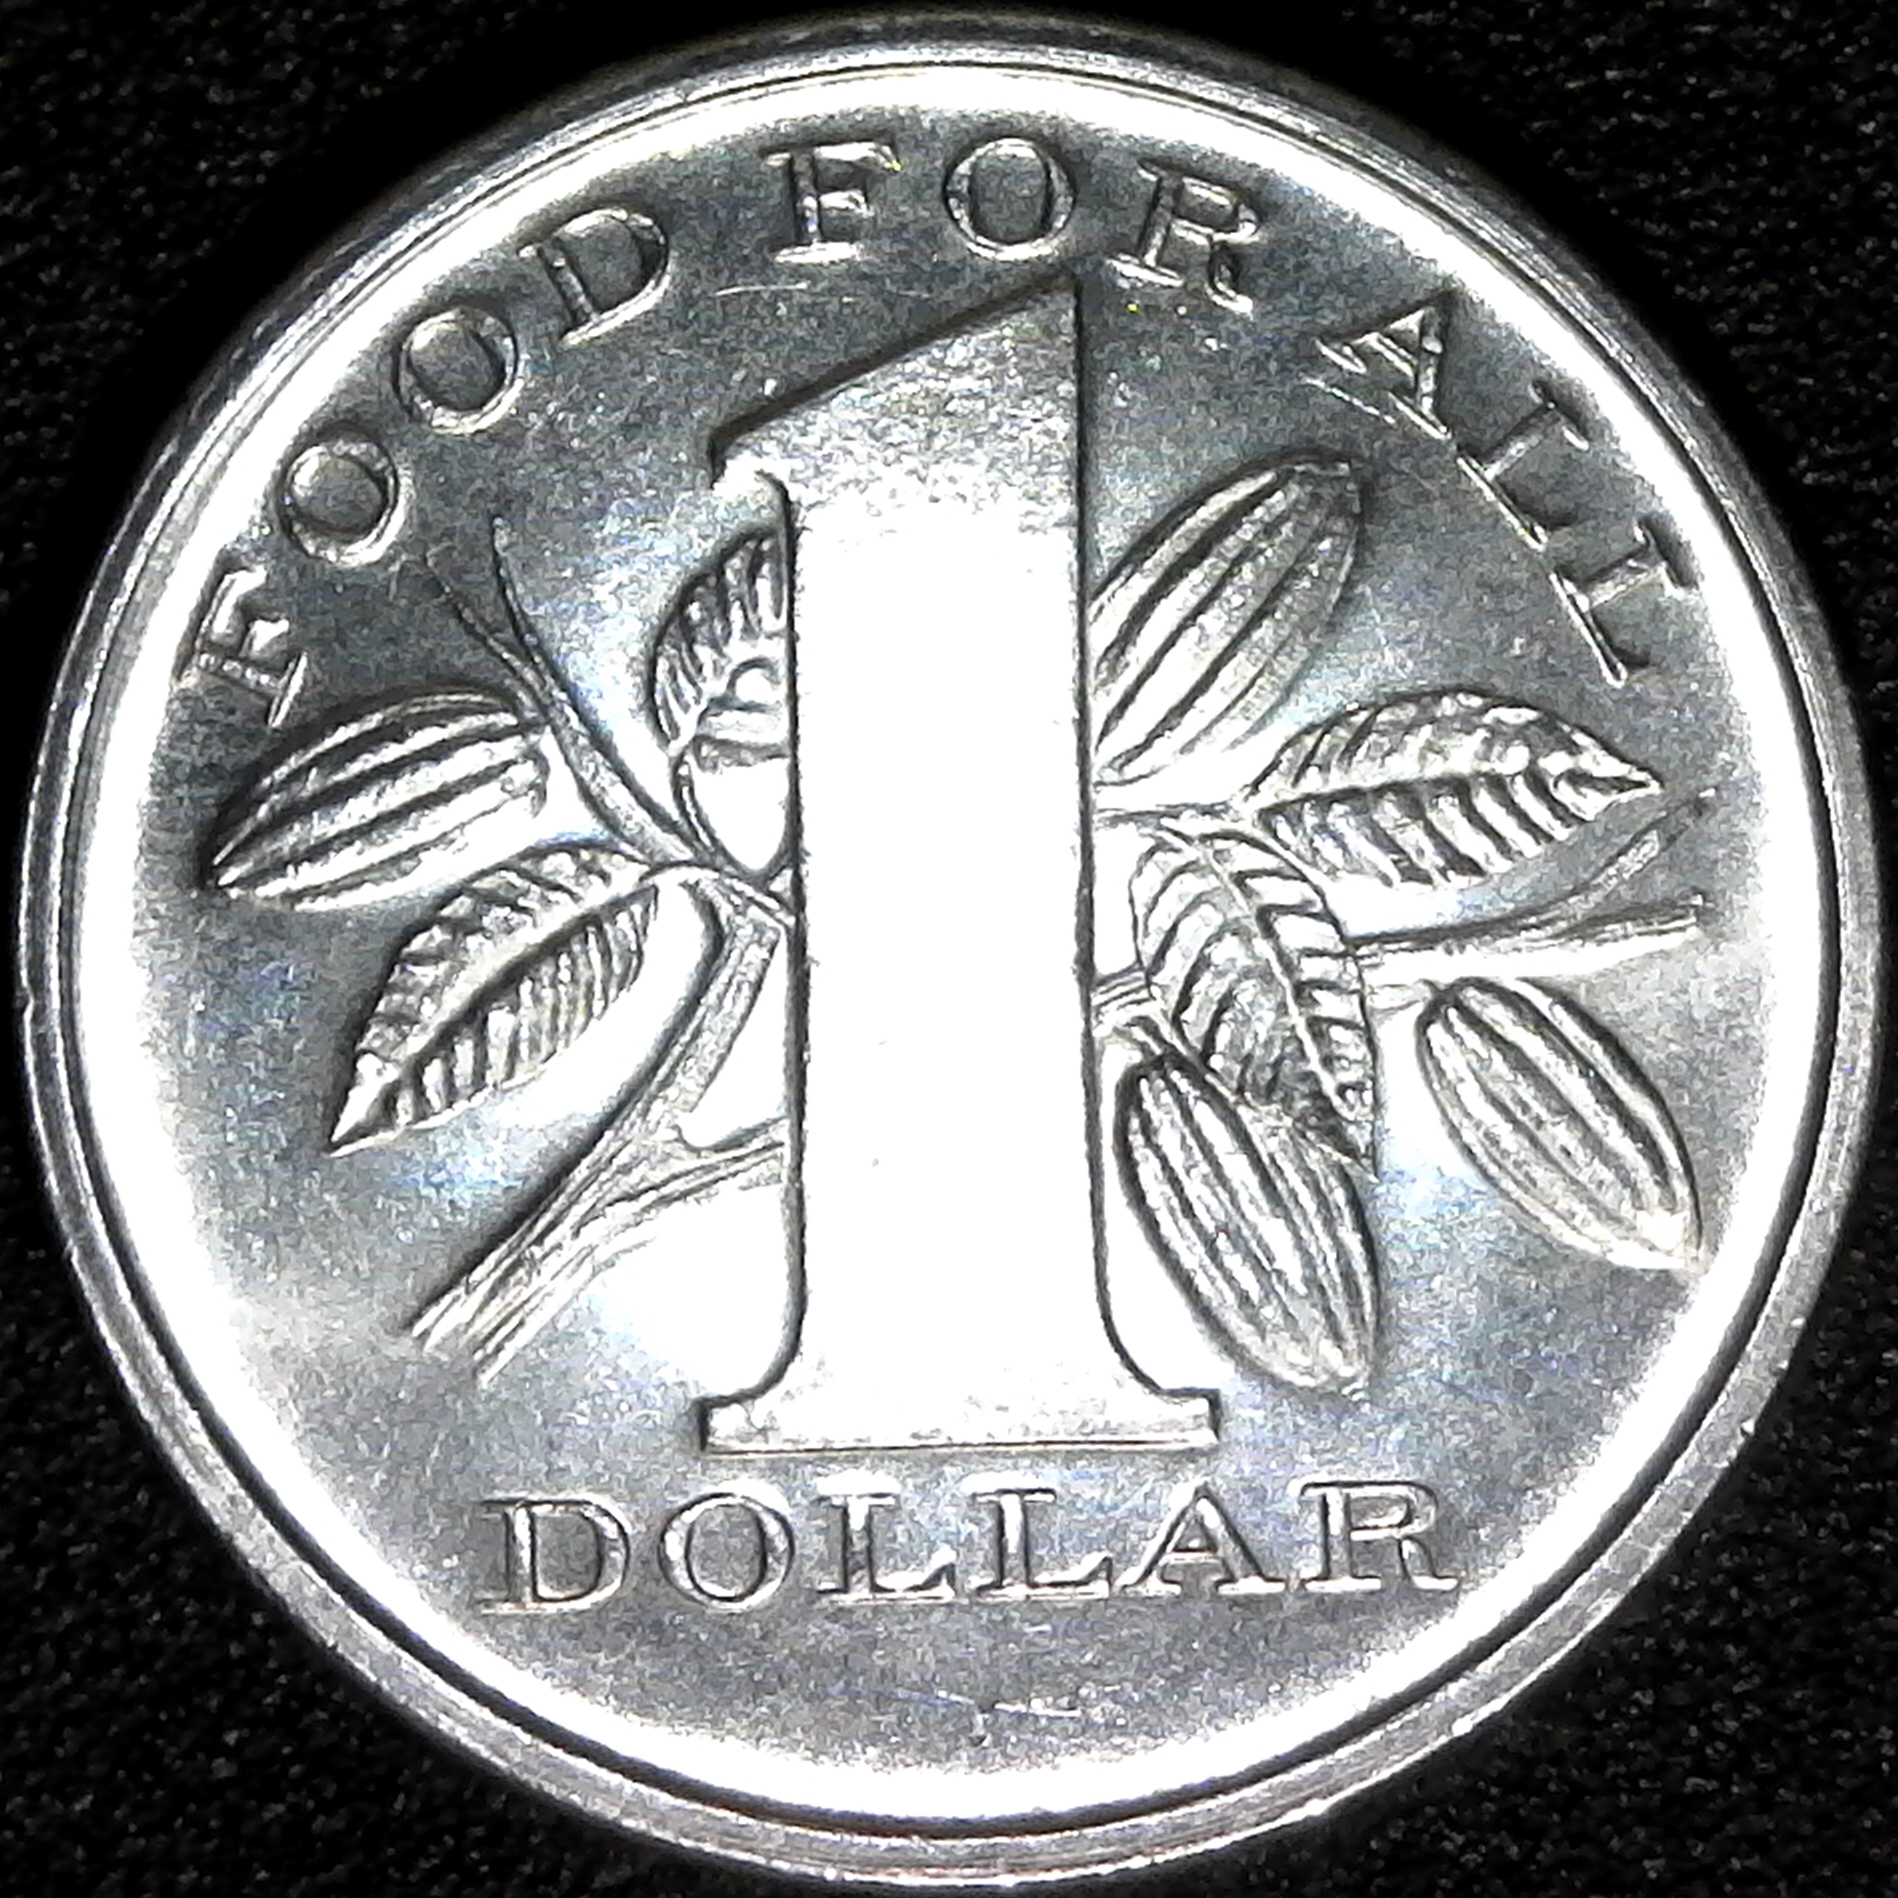 Trinidad & Tobago 1 Dollar 1969 rev.jpg